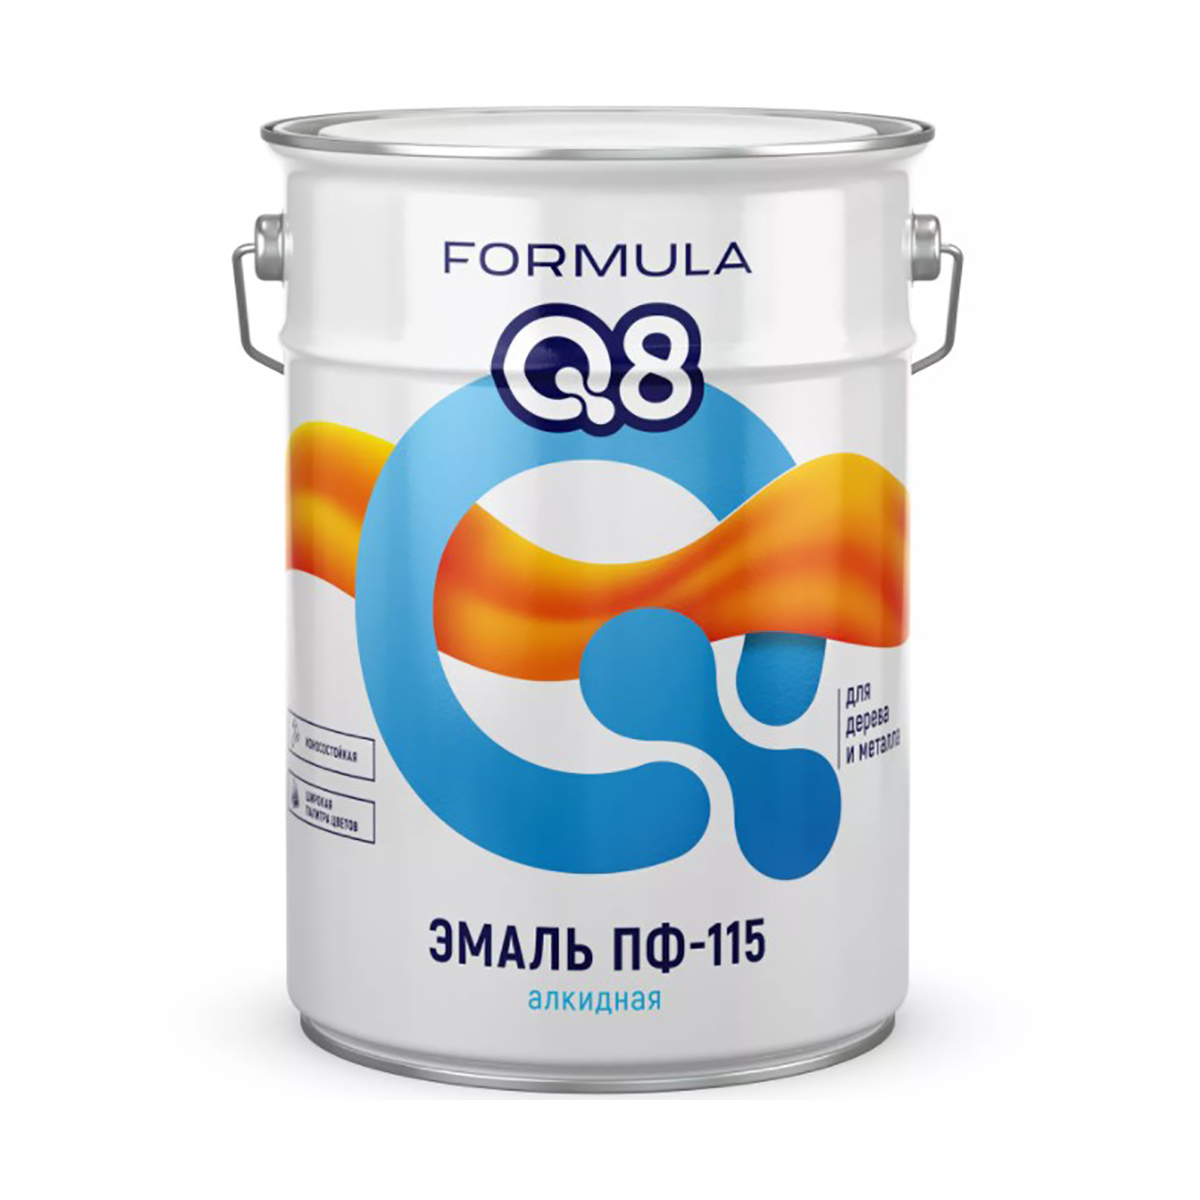 фото Эмаль пф-115 алкидная formula q8, глянцевая, 20 кг, желтая